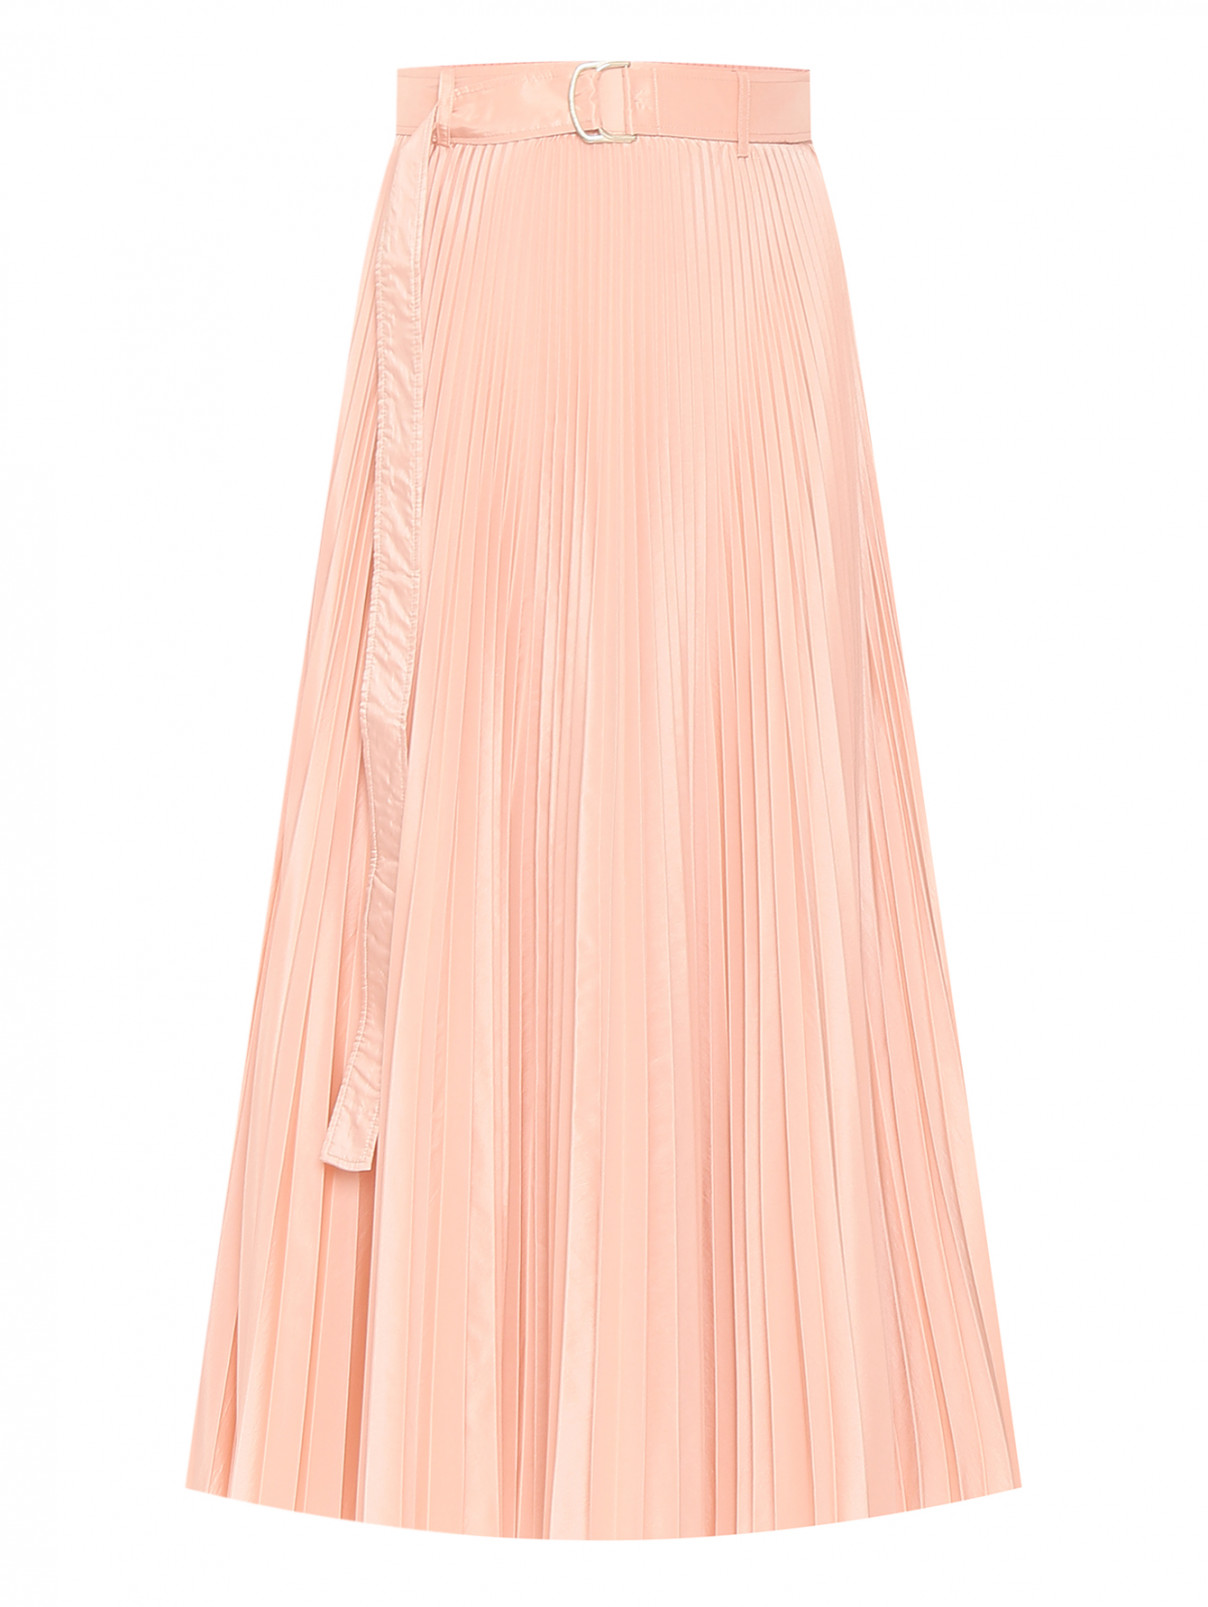 Плиссированная юбка с поясом Max Mara  –  Общий вид  – Цвет:  Розовый